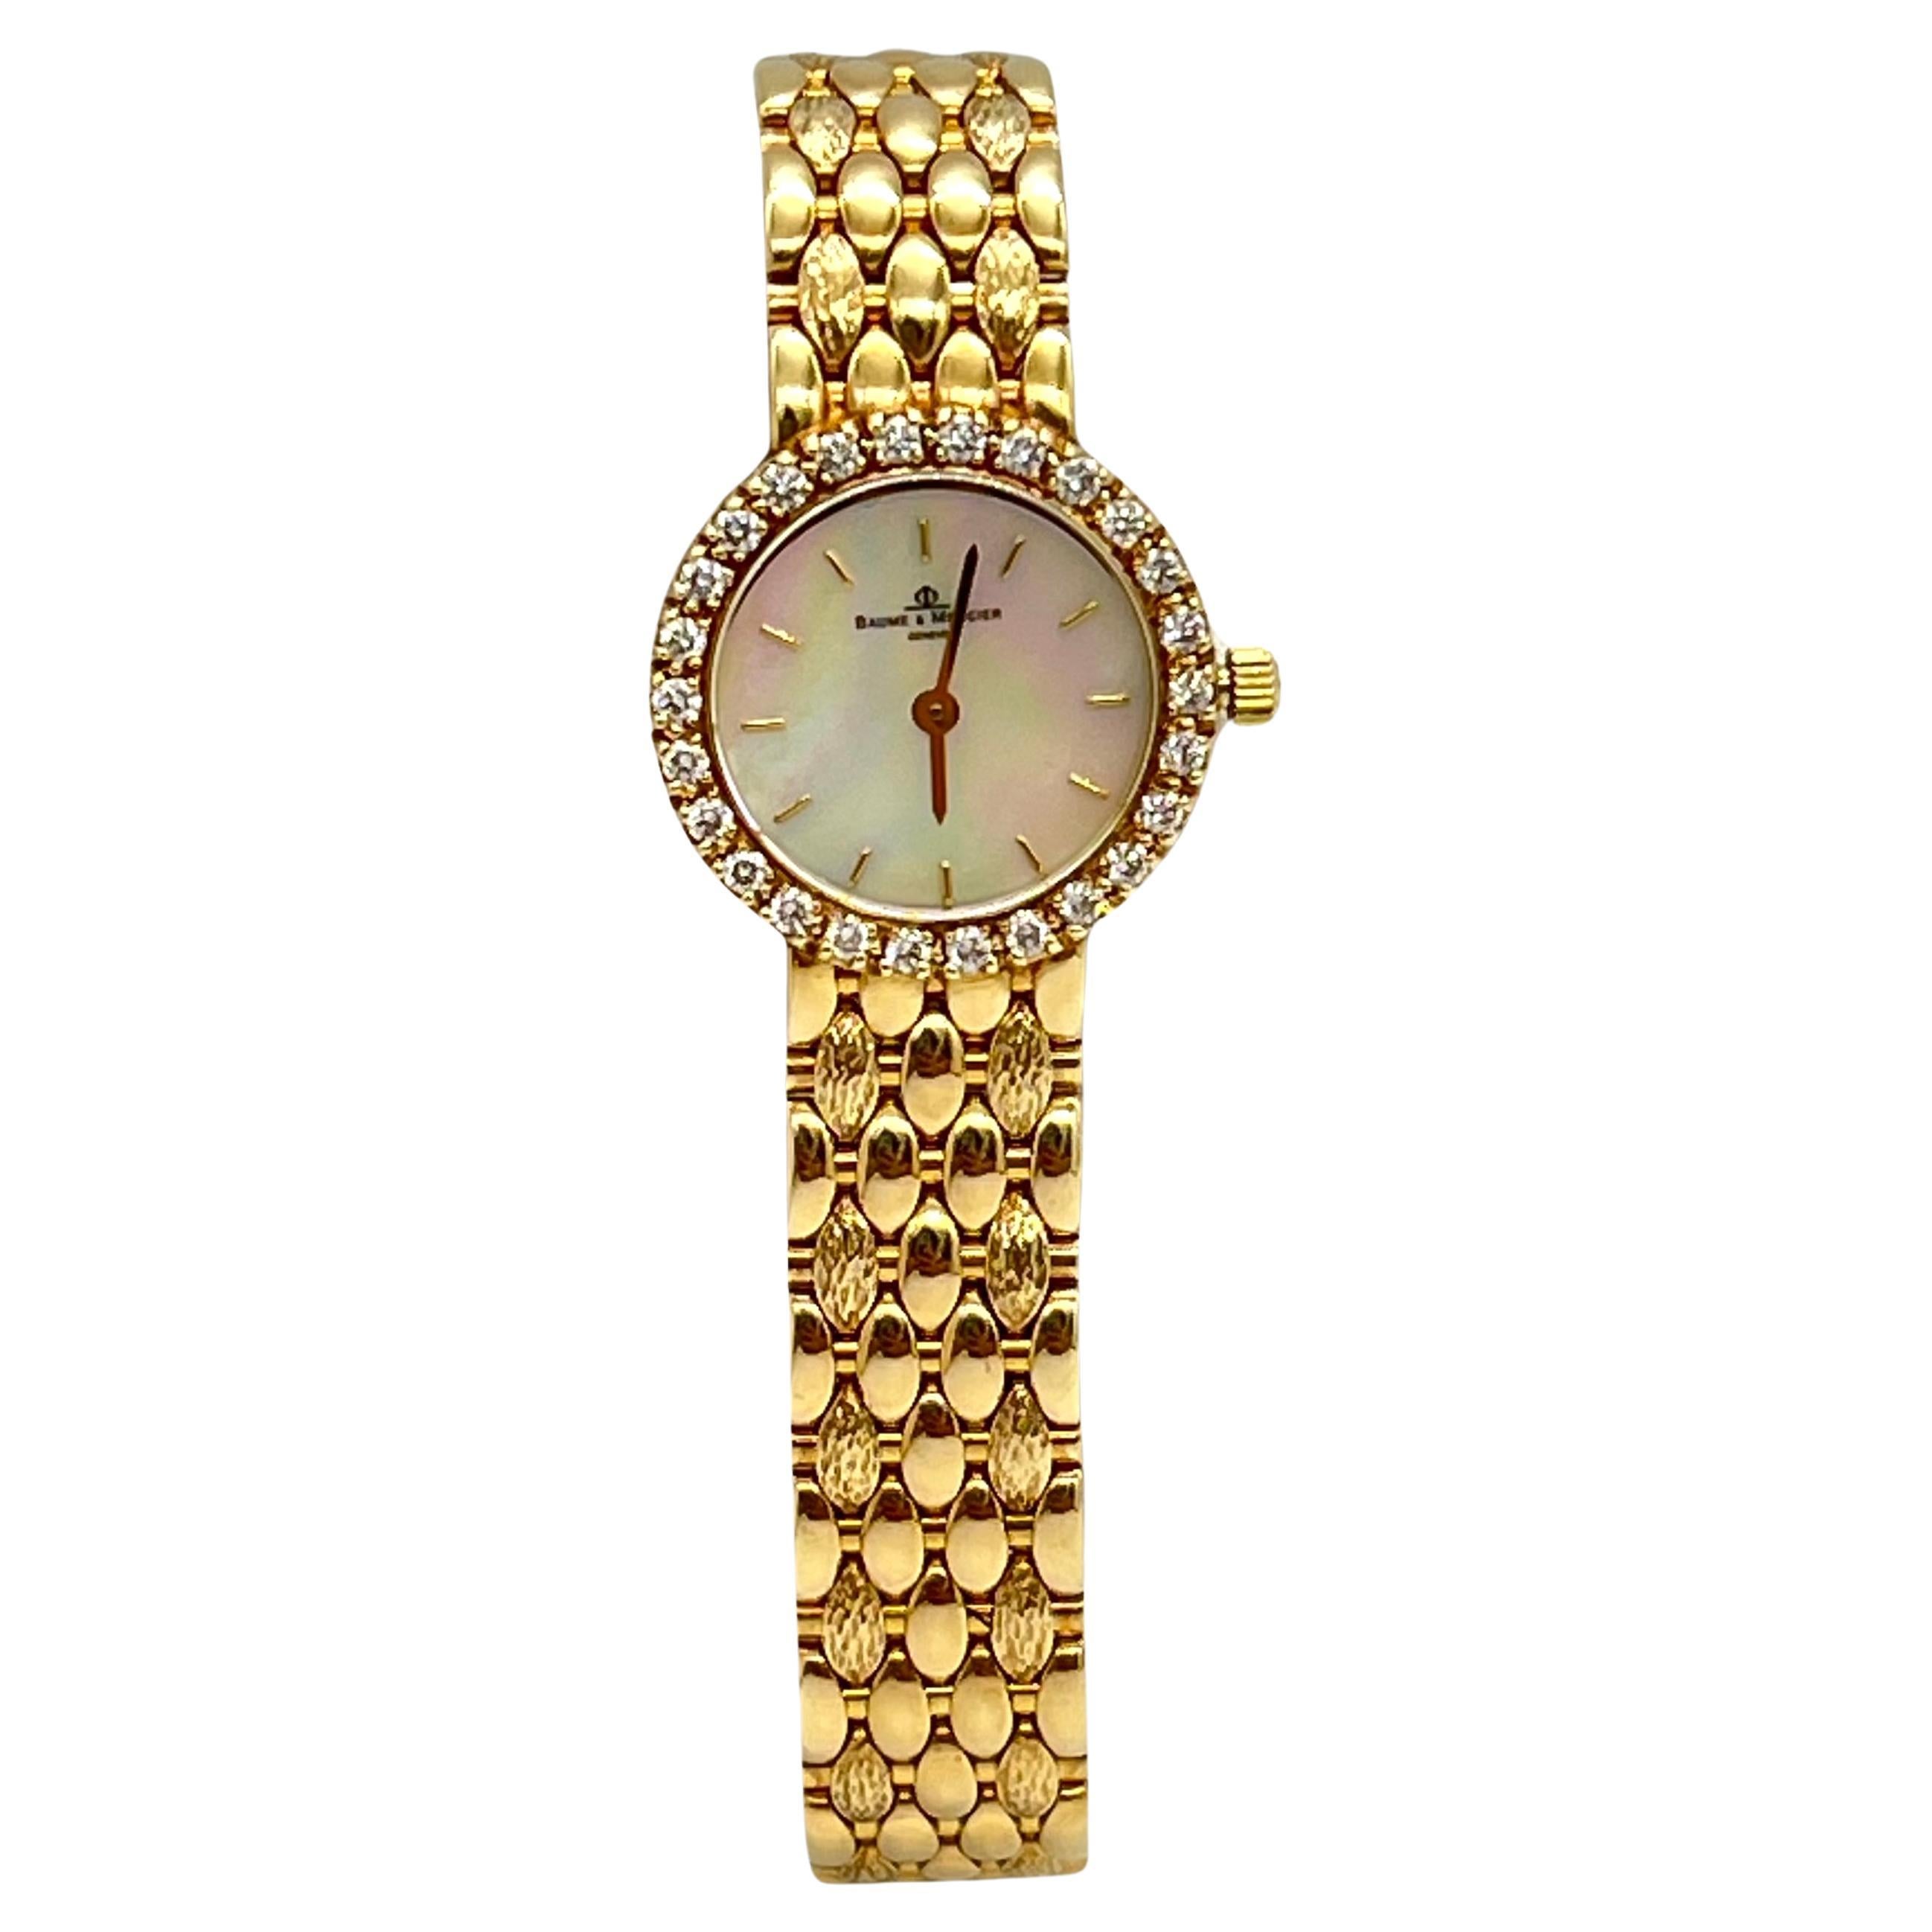 BAUME & MERCIER 14k Yellow Gold Quartz Watch For Sale